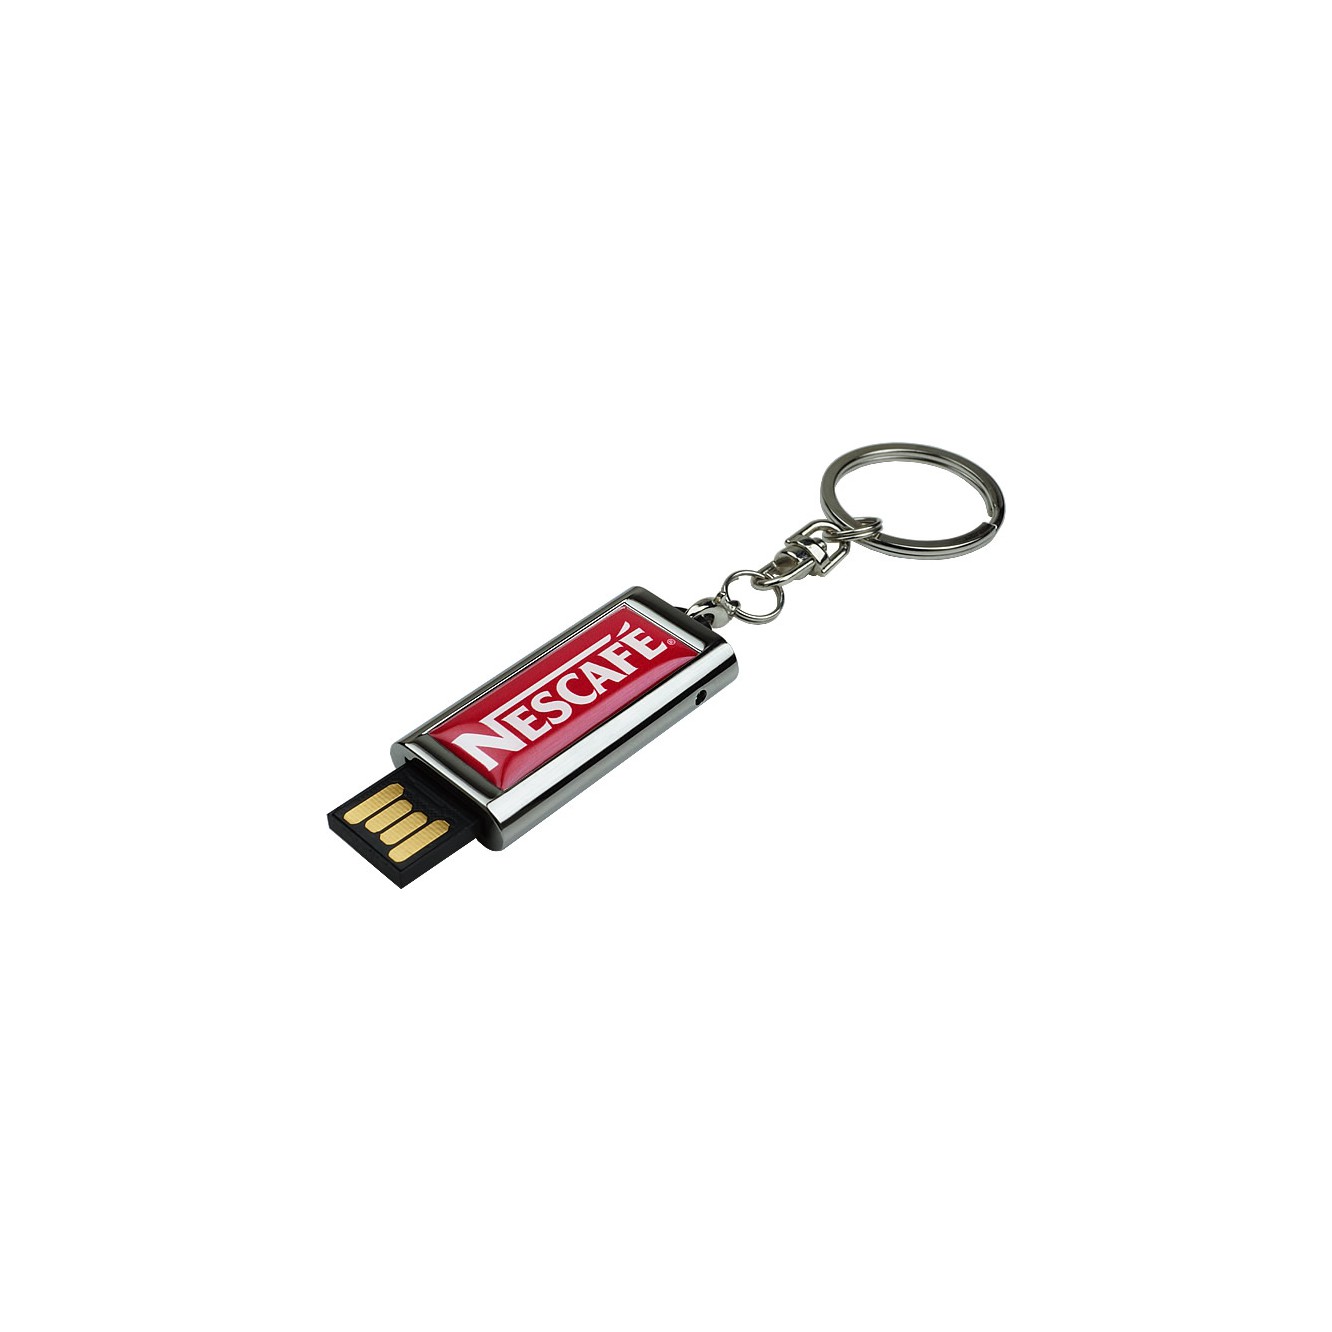 USB stick Slide